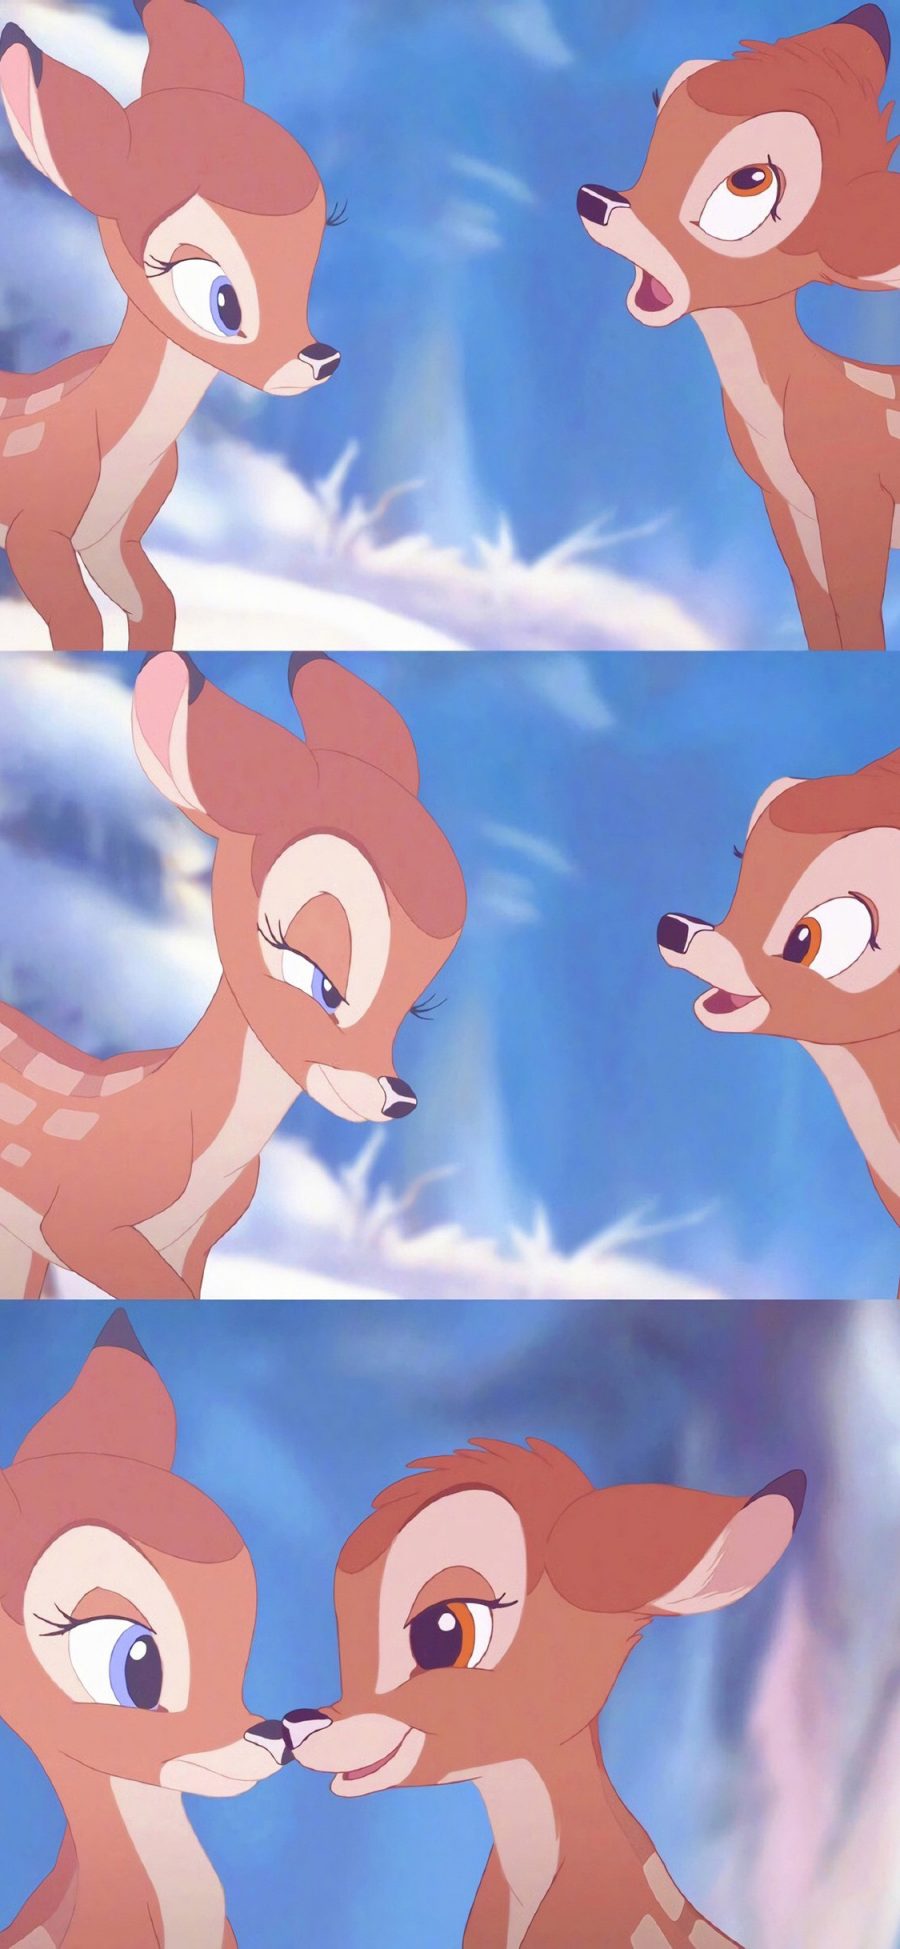 [2436×1125]小鹿斑比 动画 卡通 可爱 梅花鹿 苹果手机动漫壁纸图片